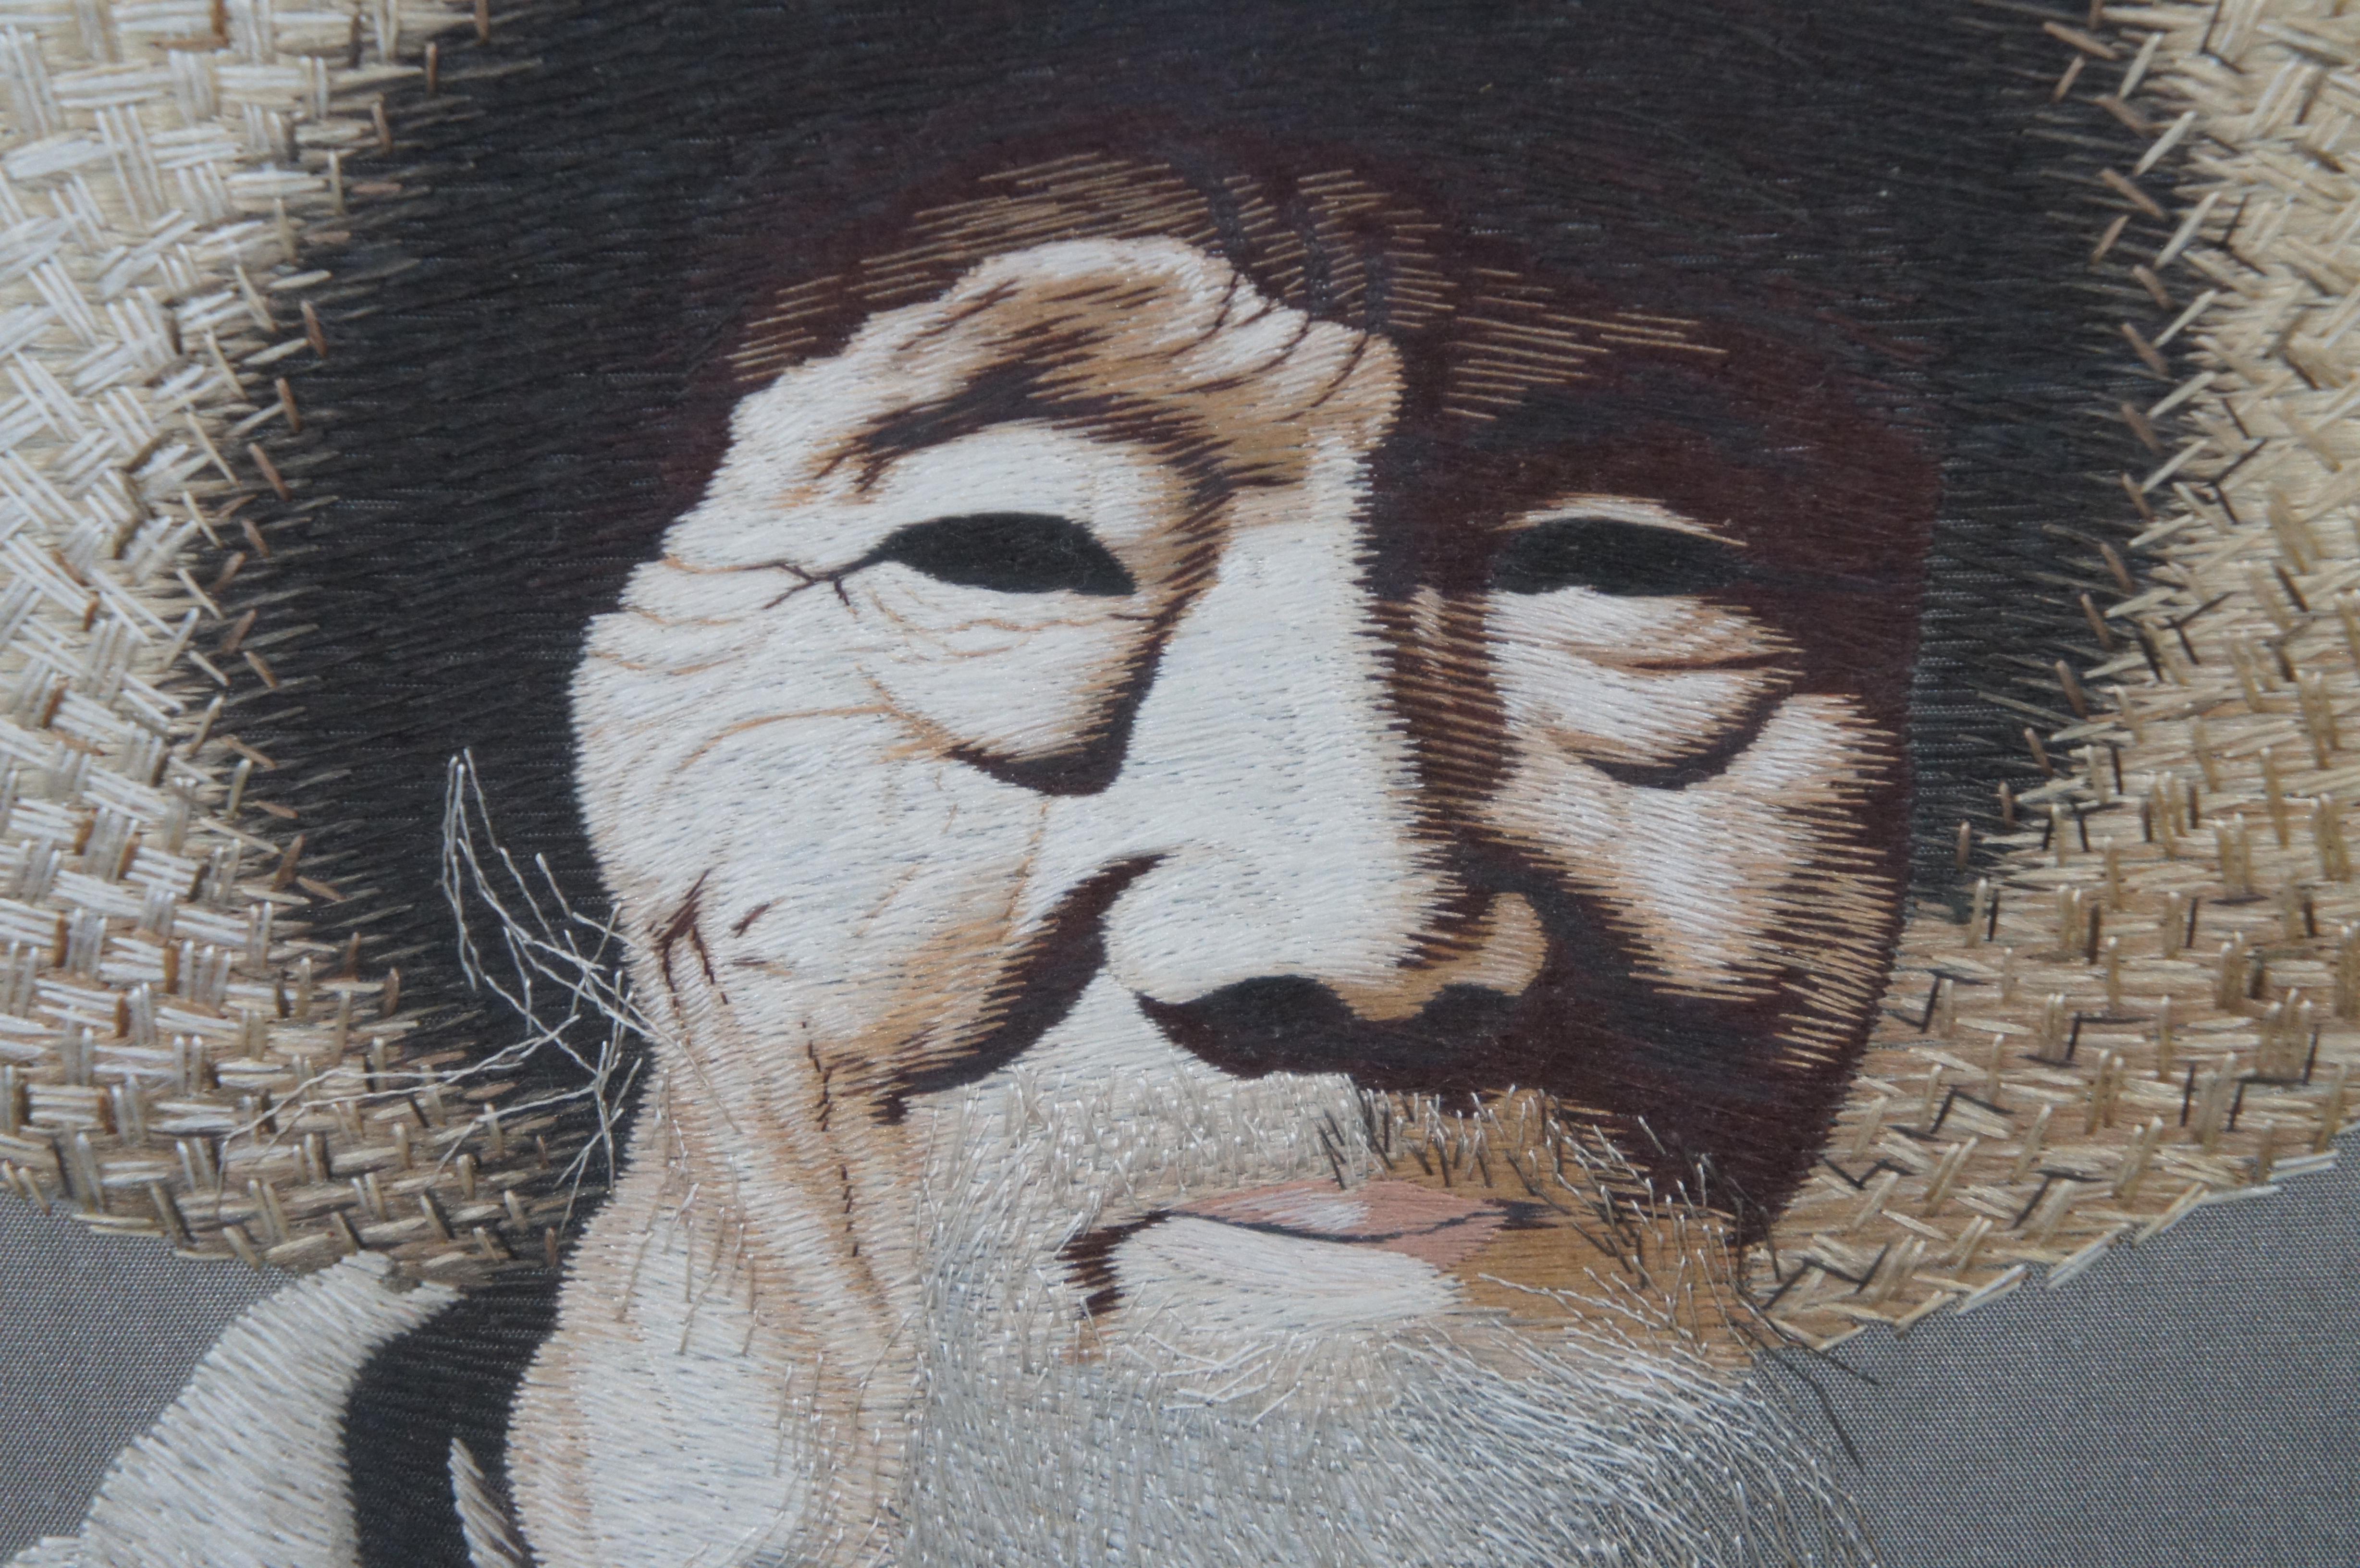 Japanisches gebürstetes Seidenporträt eines alten weichen Mannes, der Sake trinkt, Mitte des Jahrhunderts, 21